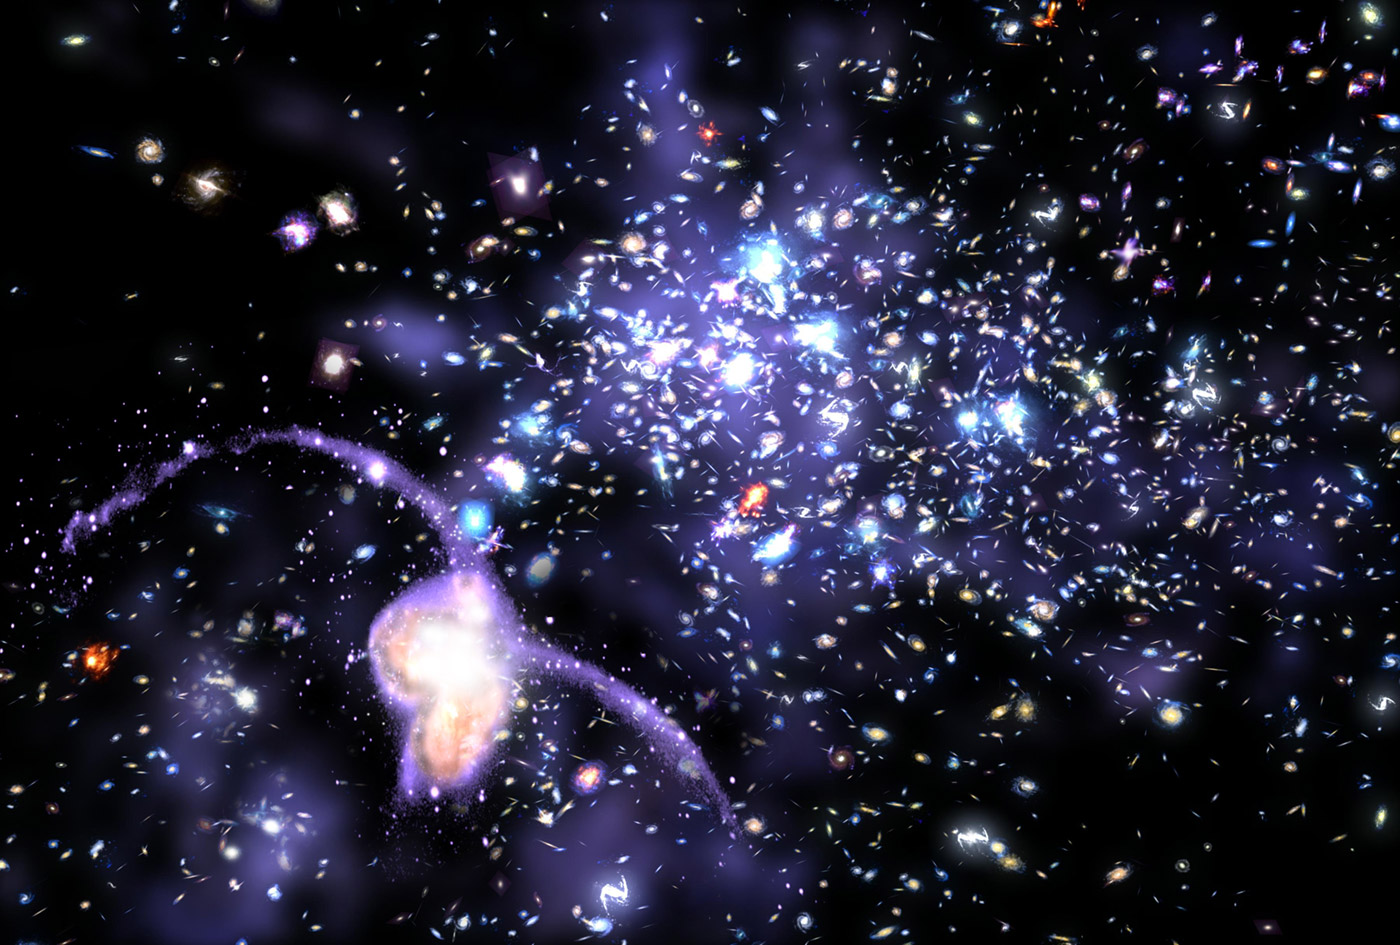 [string-of-galaxies.jpg]